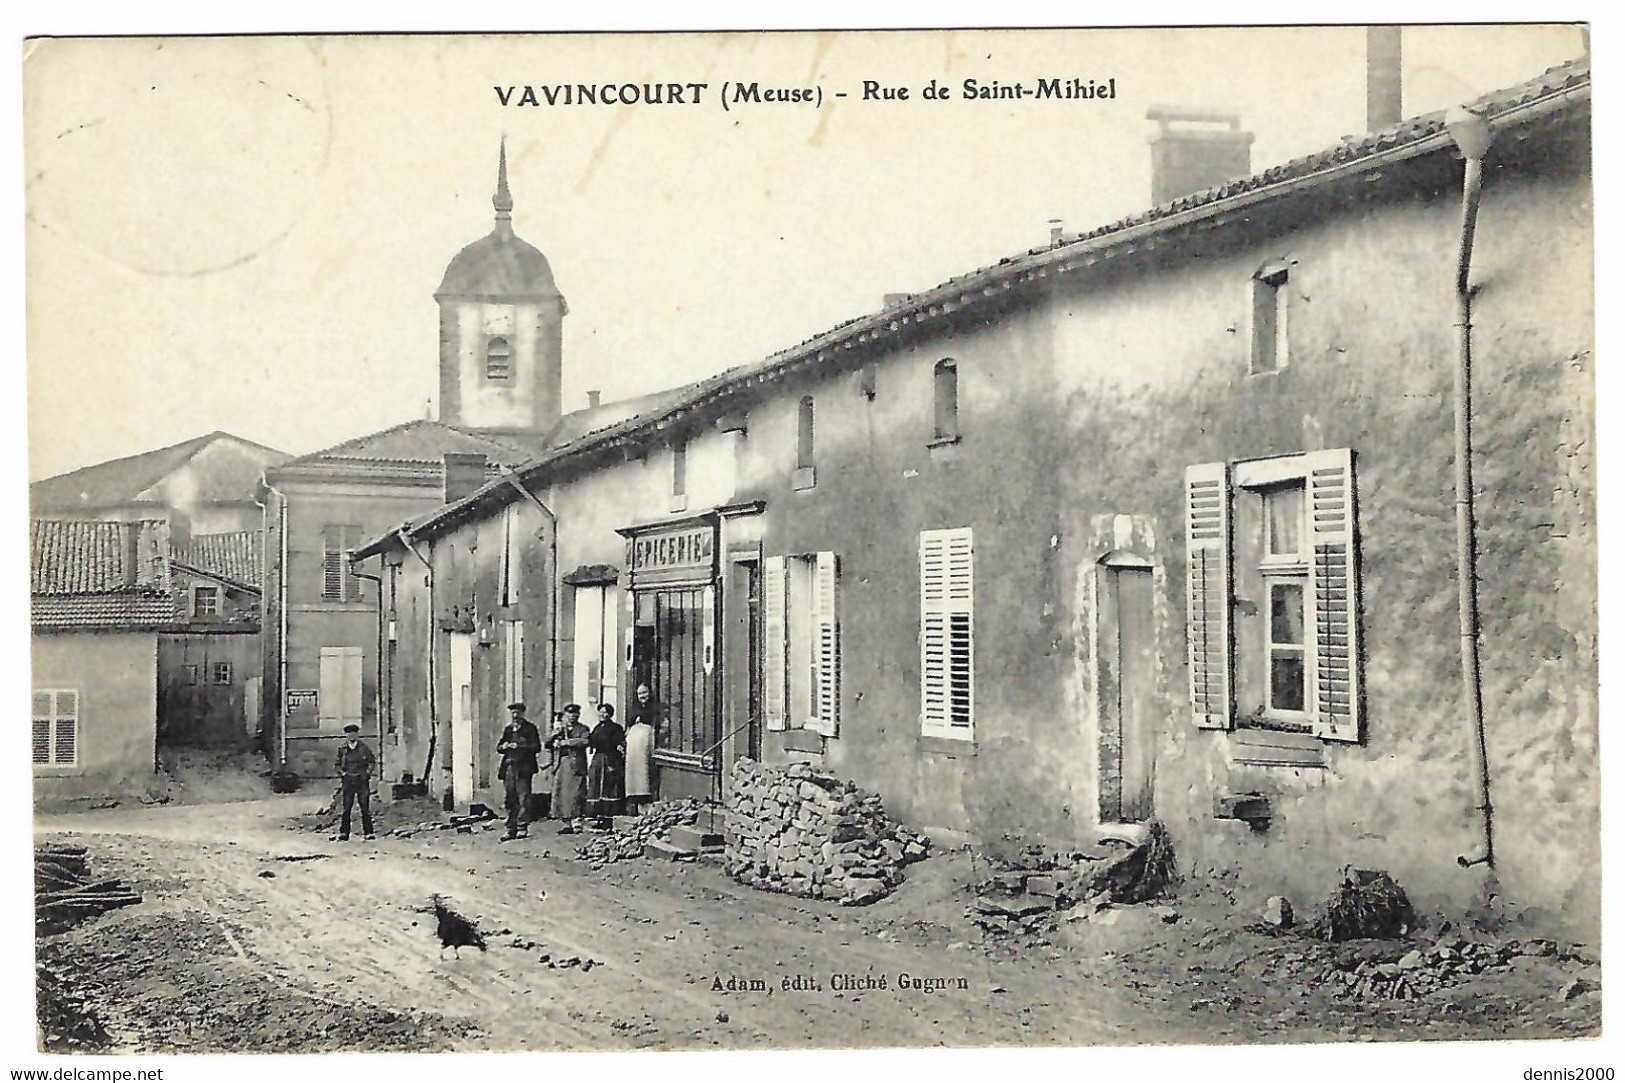 VAVINCOURT (55) - Rue DE SAINT-MIHIEL - EPICERIE - Ed. Adam, Cliché Gugnon - Vavincourt